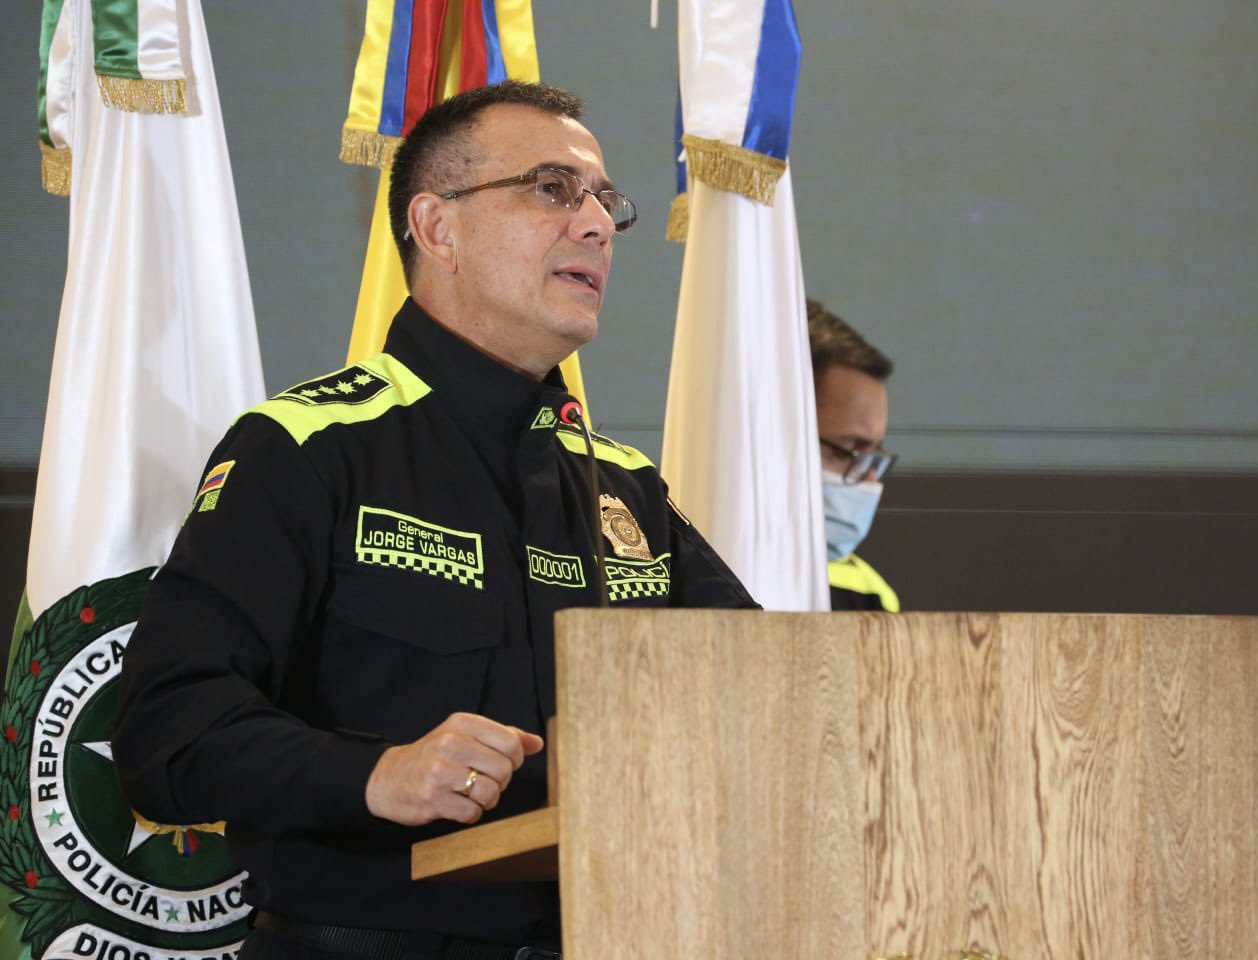 General Jorge Luis Vargas, comandante de la Policía Nacional, durante la instalación del Congreso Internacional de Seguridad Turística. / Policía Nacional